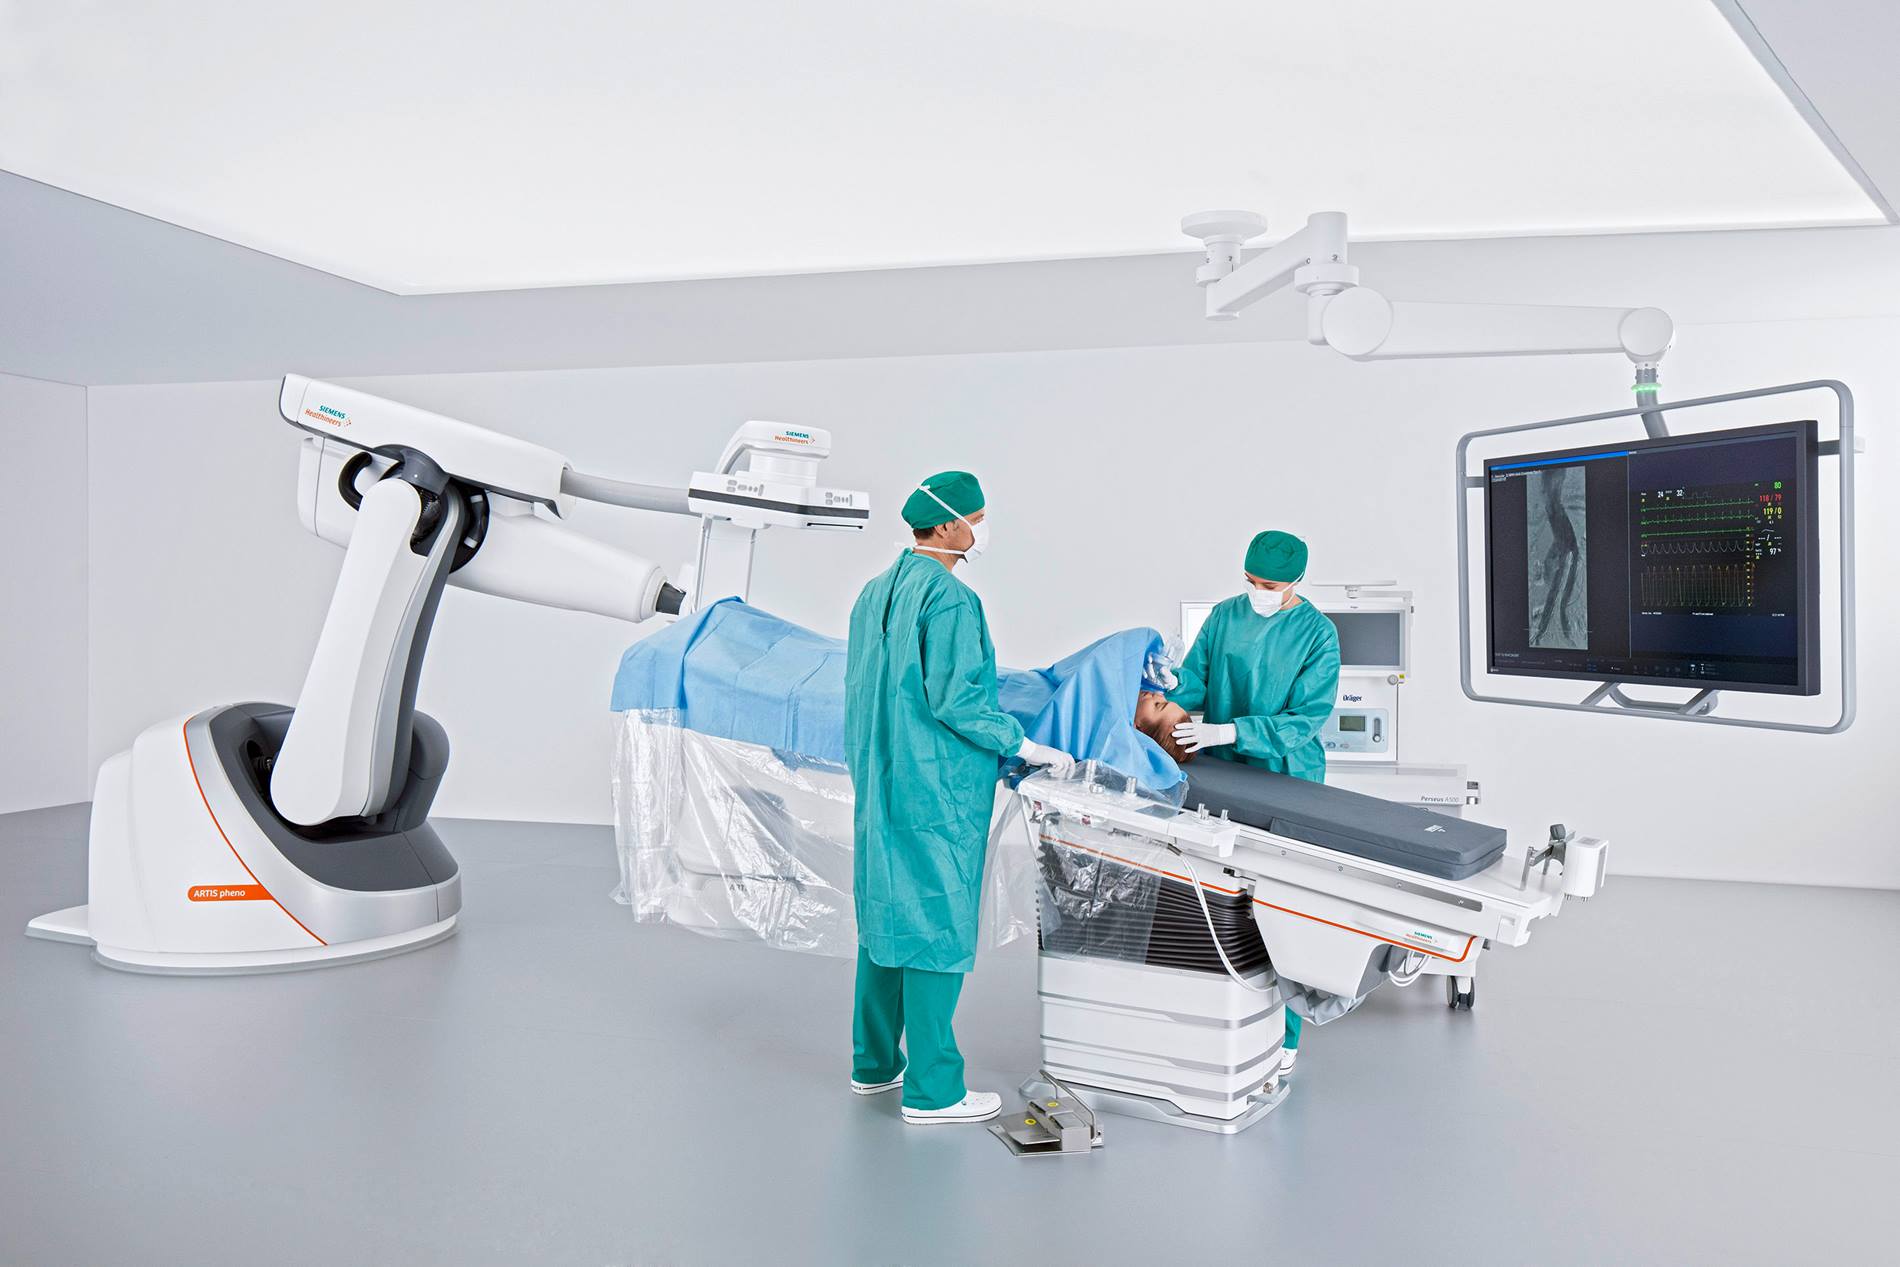 Das roboterbasierte Angiographiesystem Artis pheno von Siemens Healthcare vereinfacht Operationen